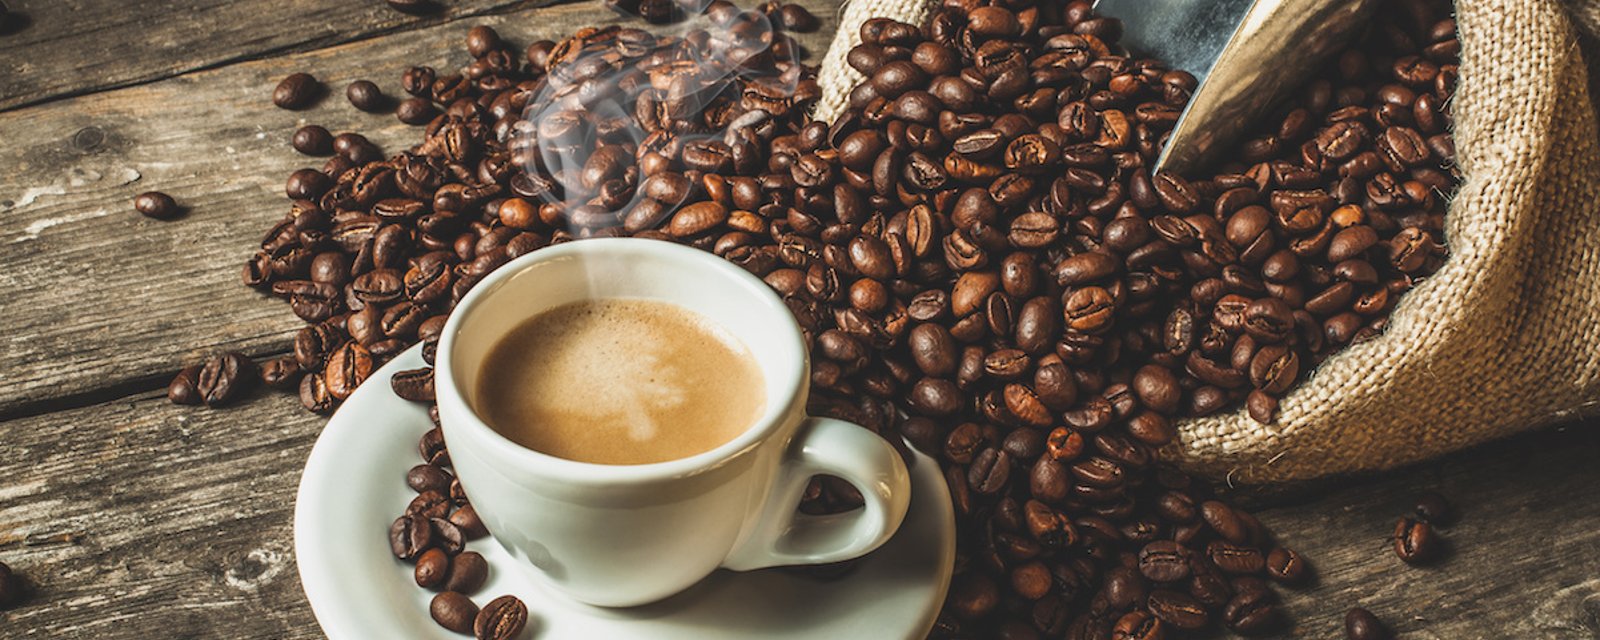 Comment conserver les grains de café pour toujours profiter d’une infusion plus savoureuse